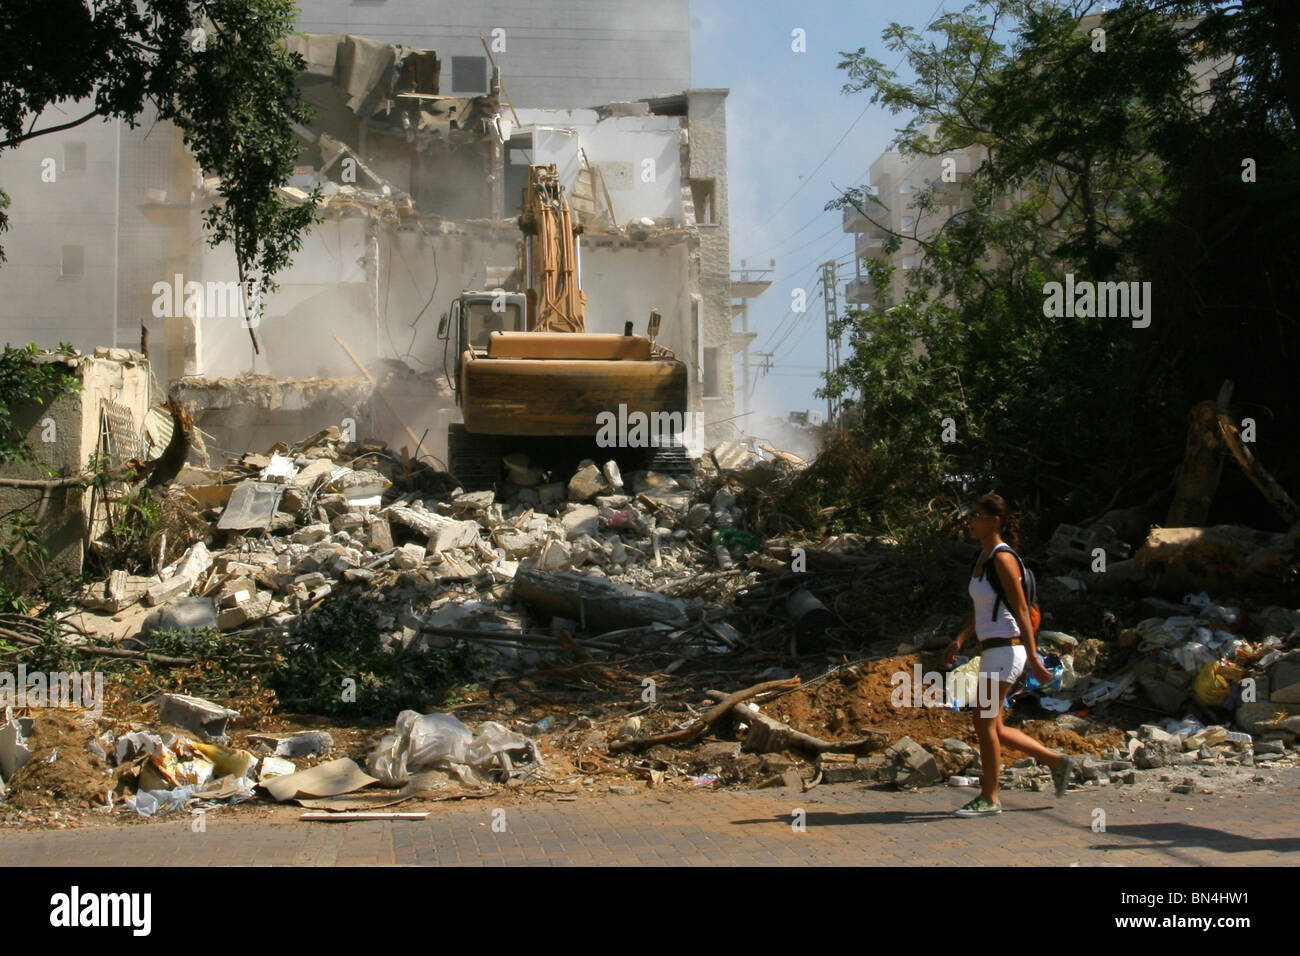 Israël, Natanya, la démolition d'un bâtiment ancien pour faire place à un nouveau bâtiment moderne élevé. Banque D'Images